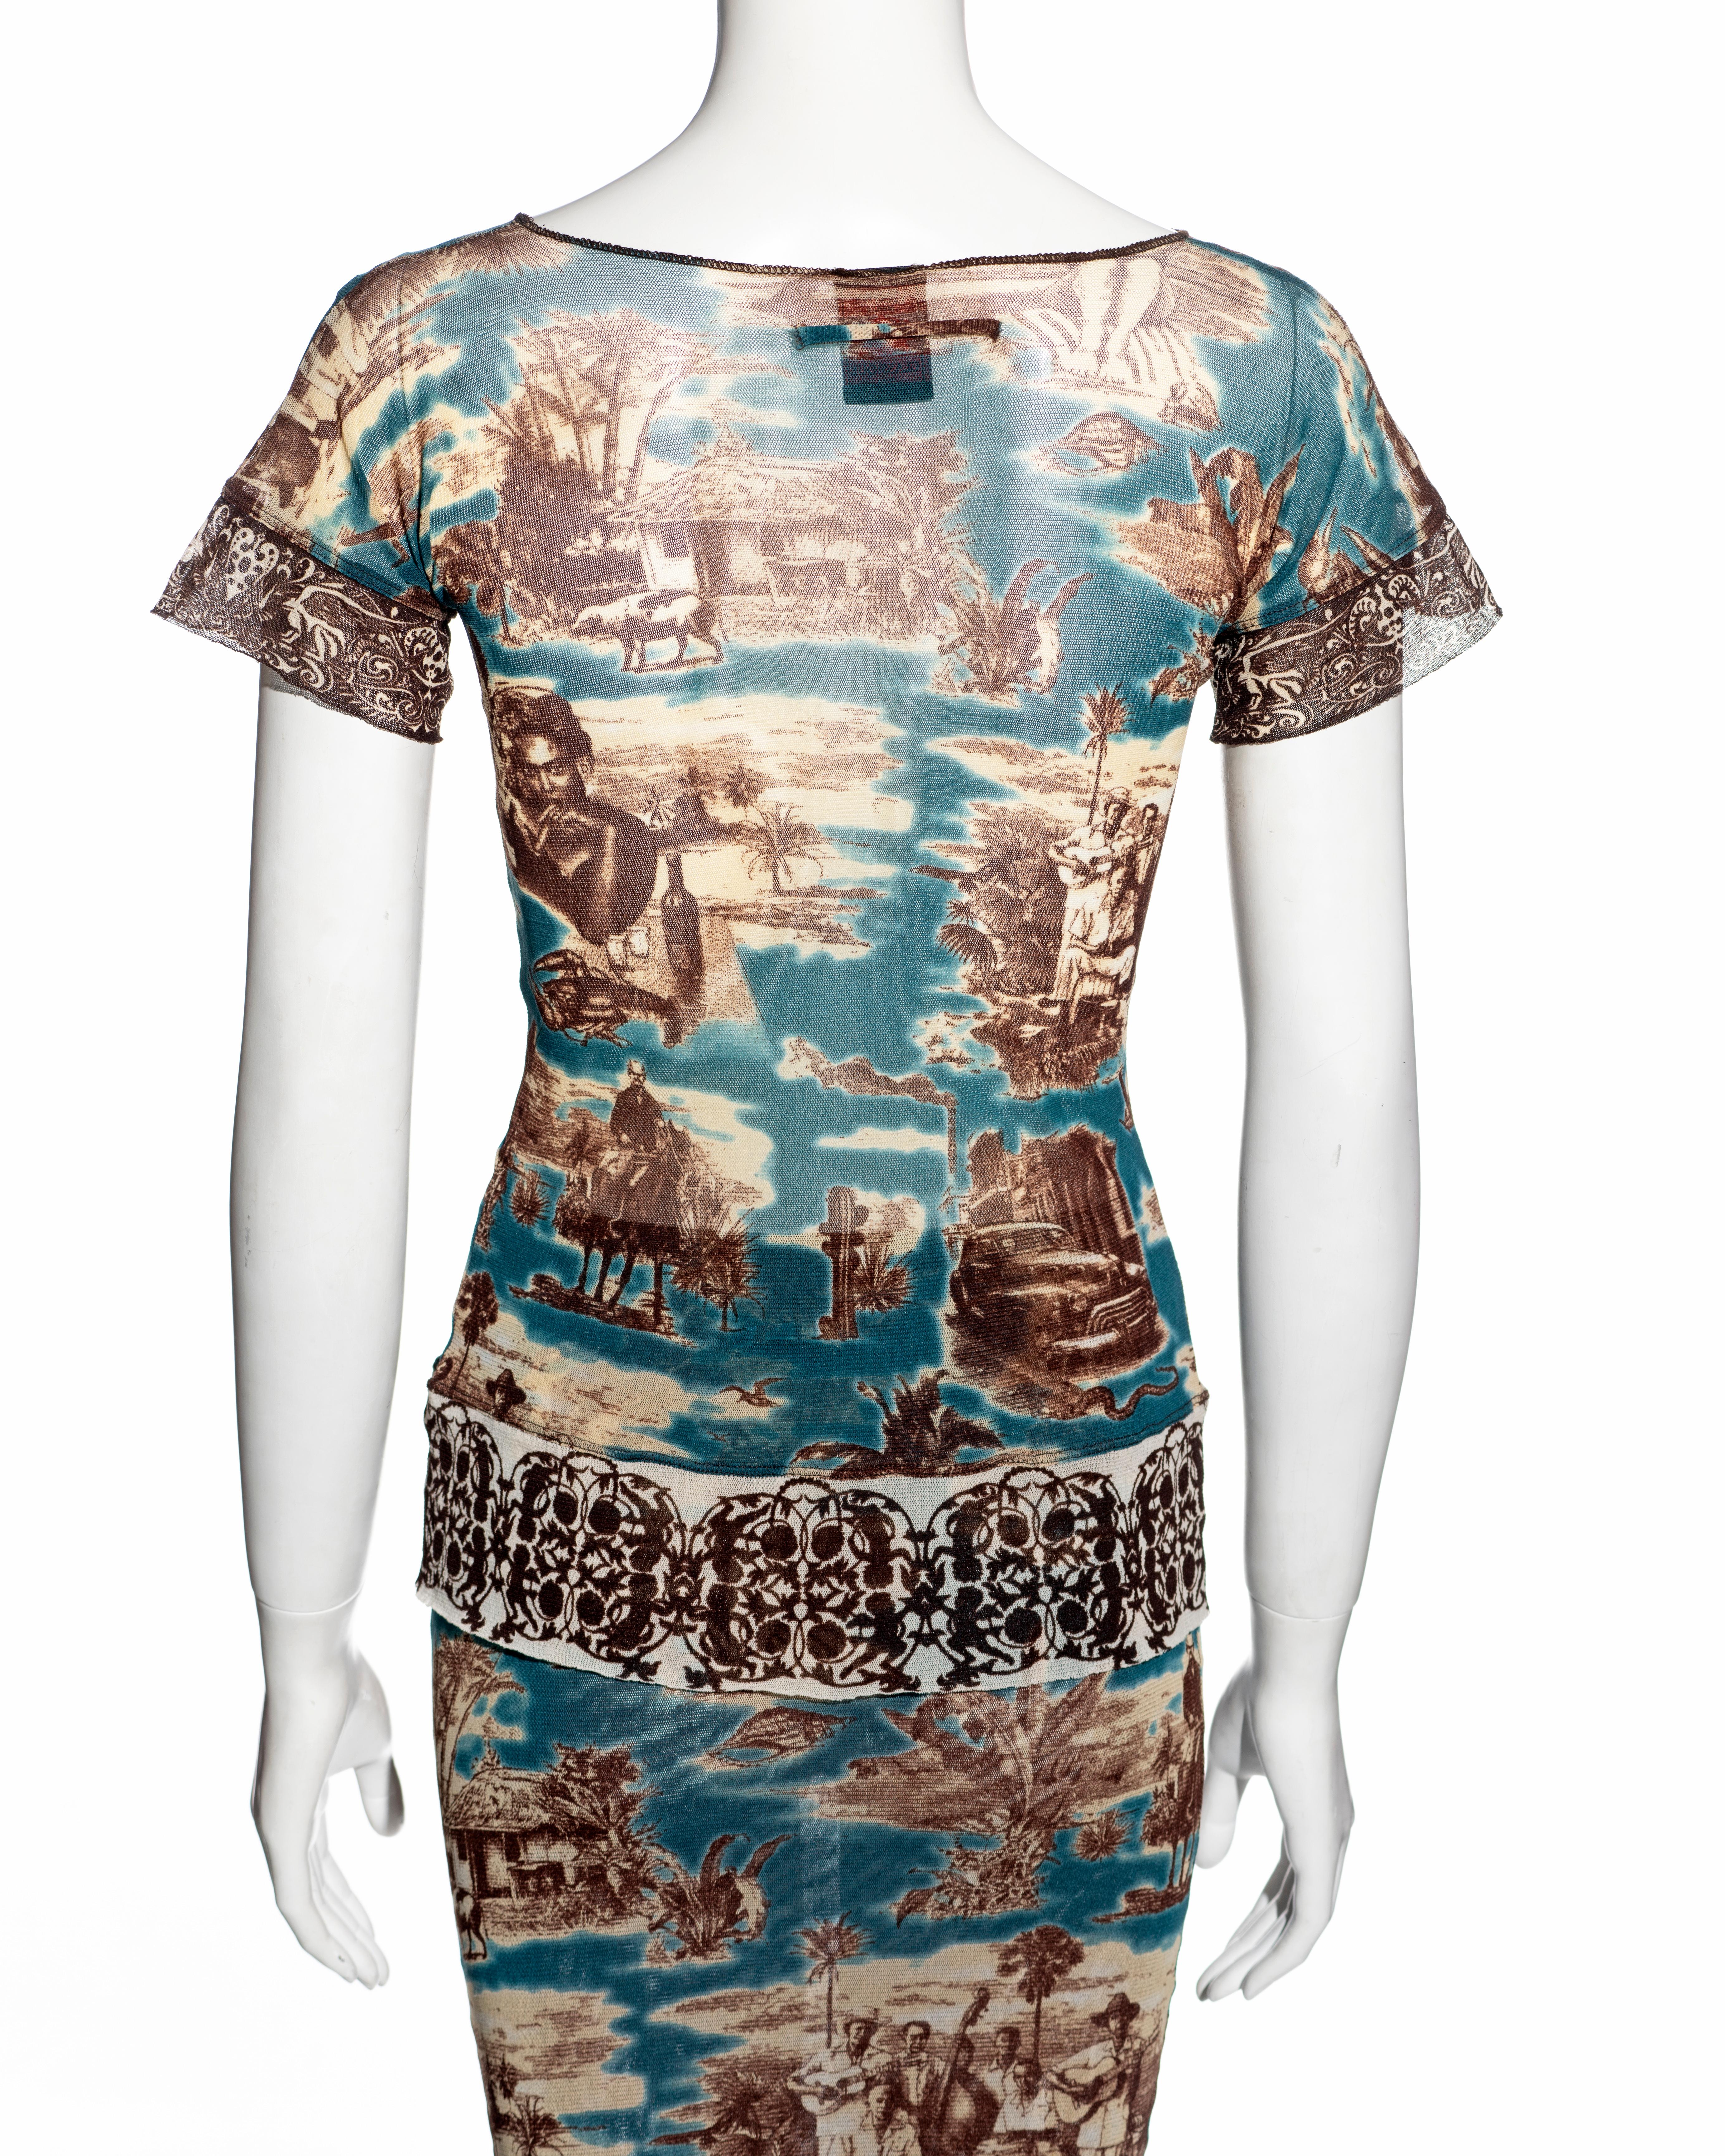 Jean Paul Gaultier Cuba print mesh t-shirt and maxi skirt set, ss 1998 3